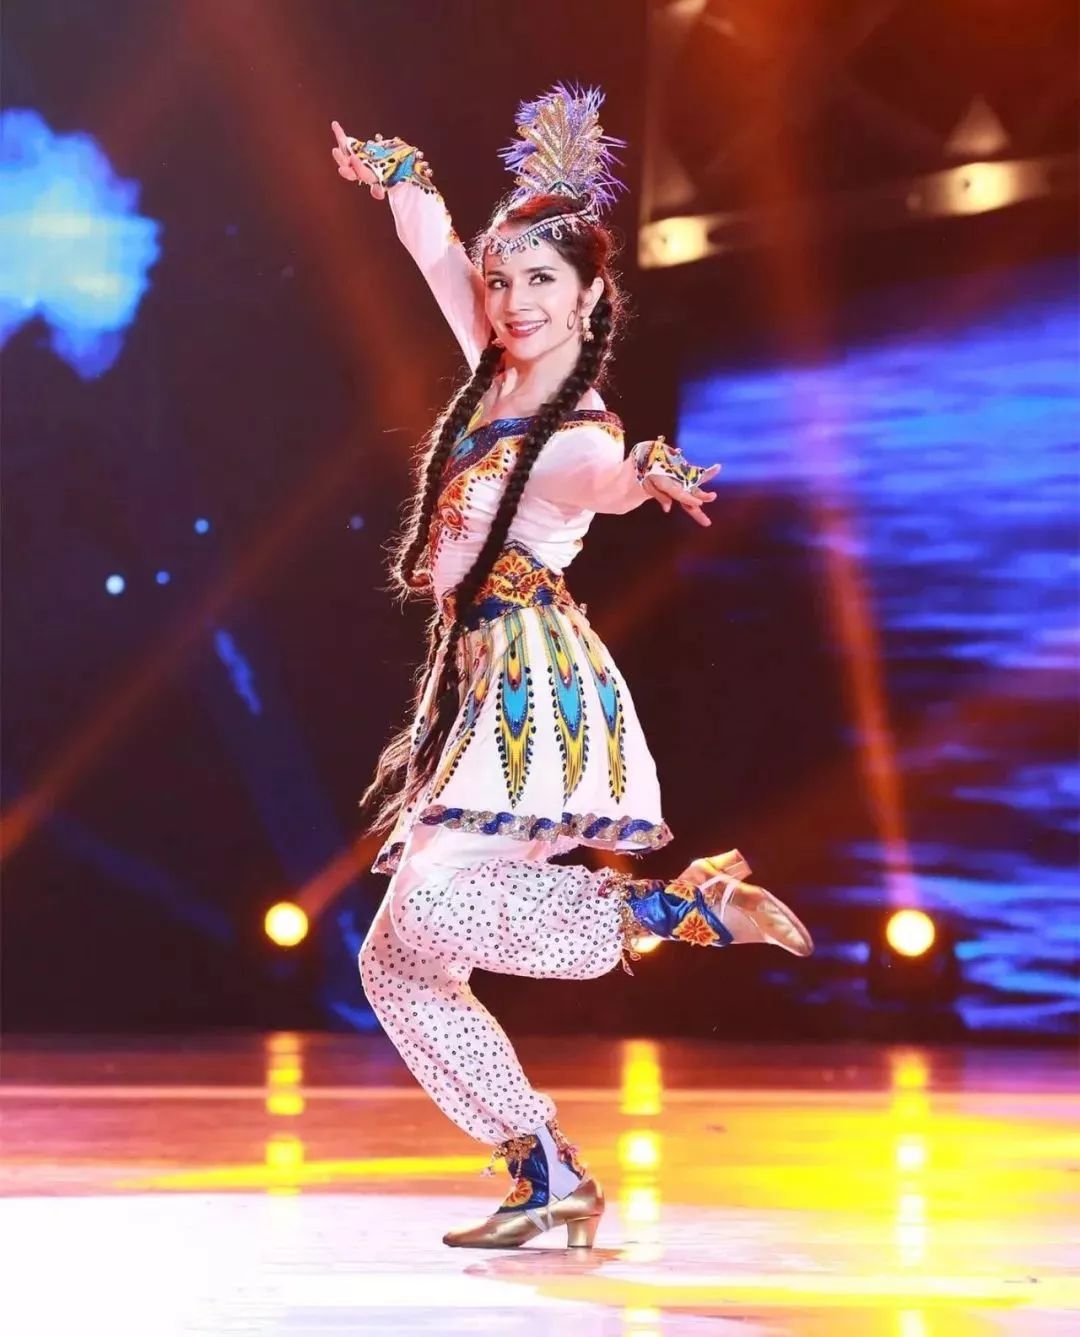 她就是中国好舞蹈冠军古丽米娜!她是天生的舞者,更是天生的文化使者